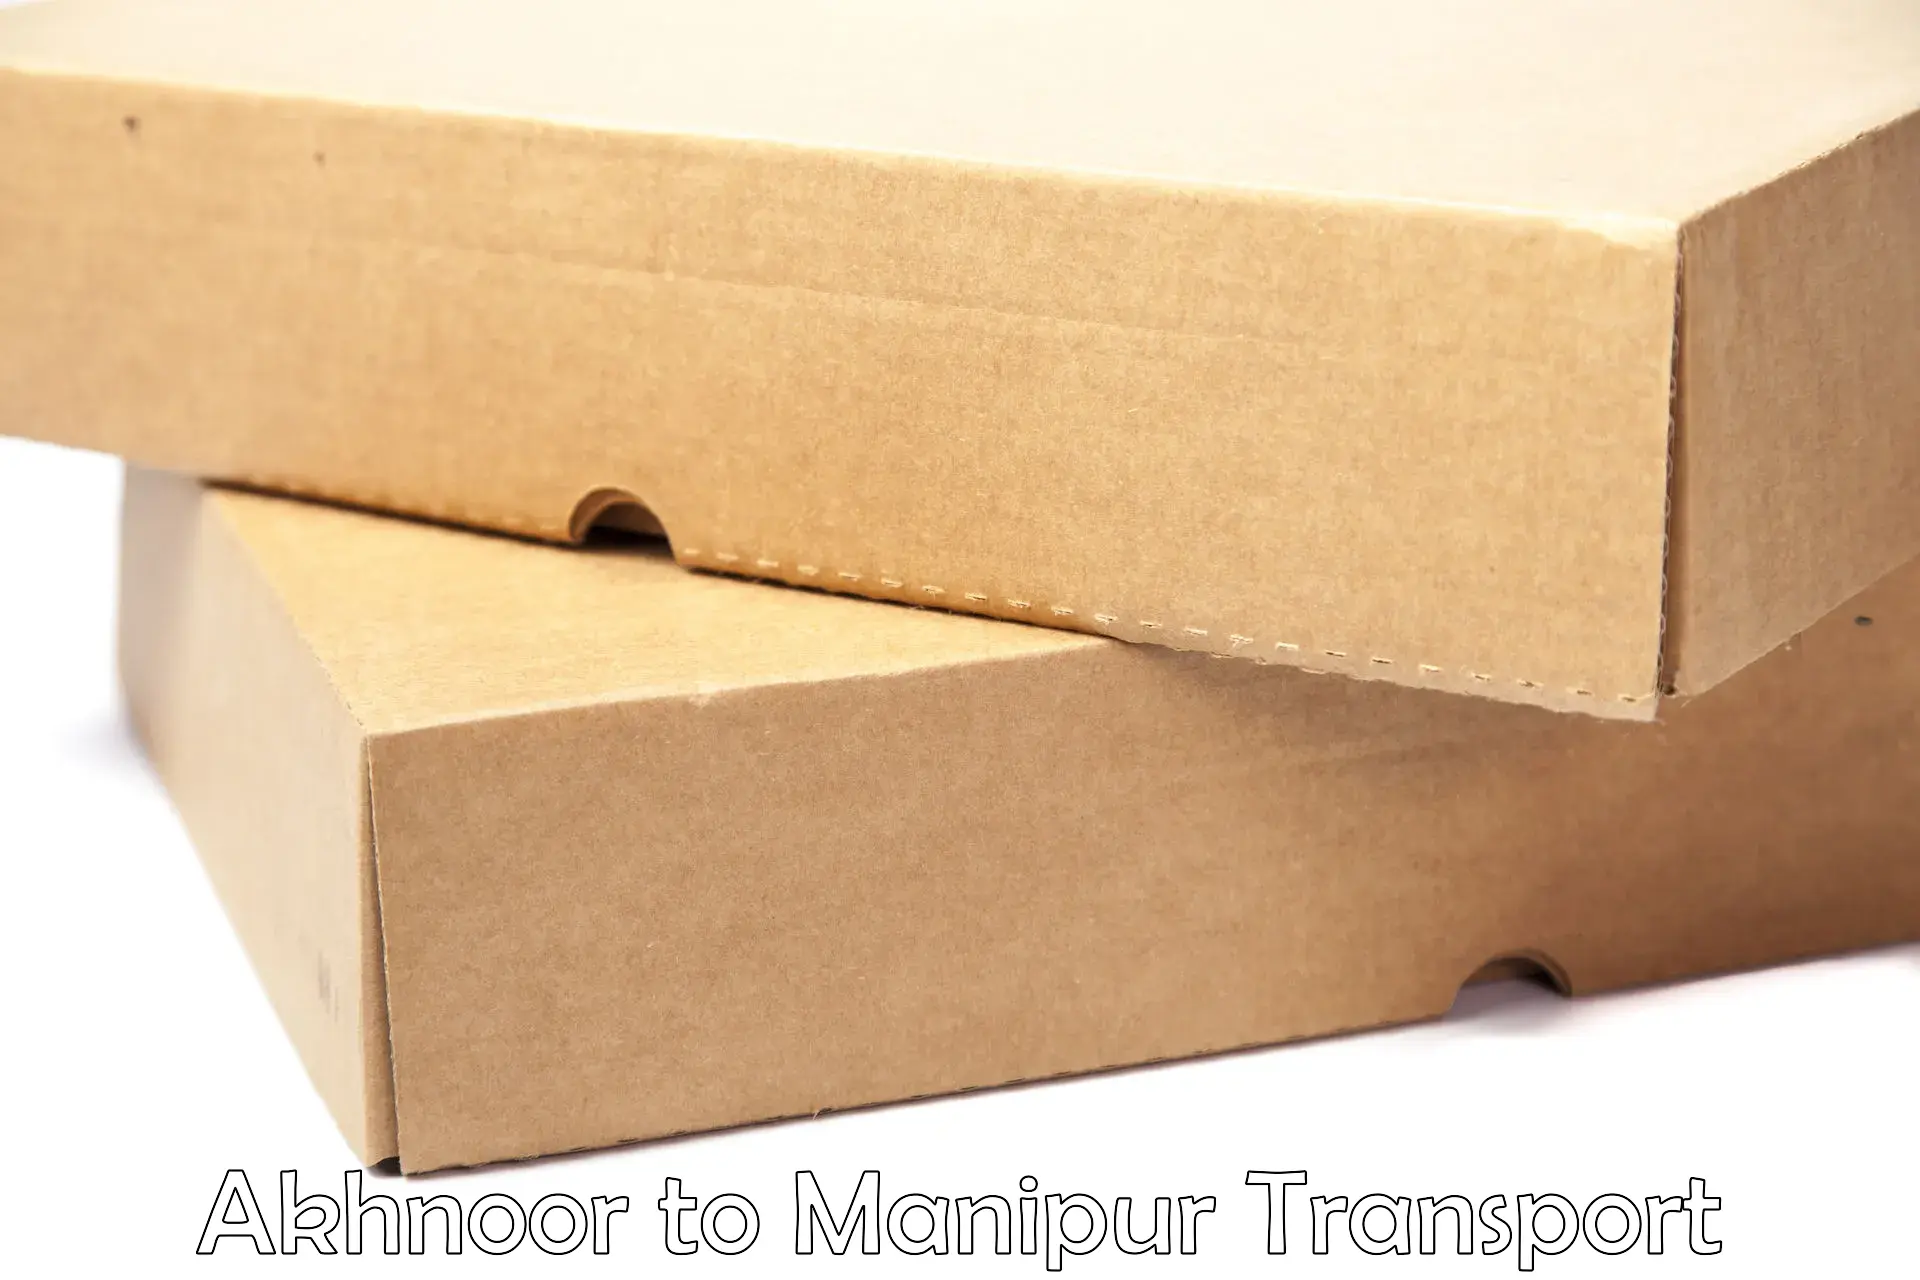 Online transport booking Akhnoor to Manipur